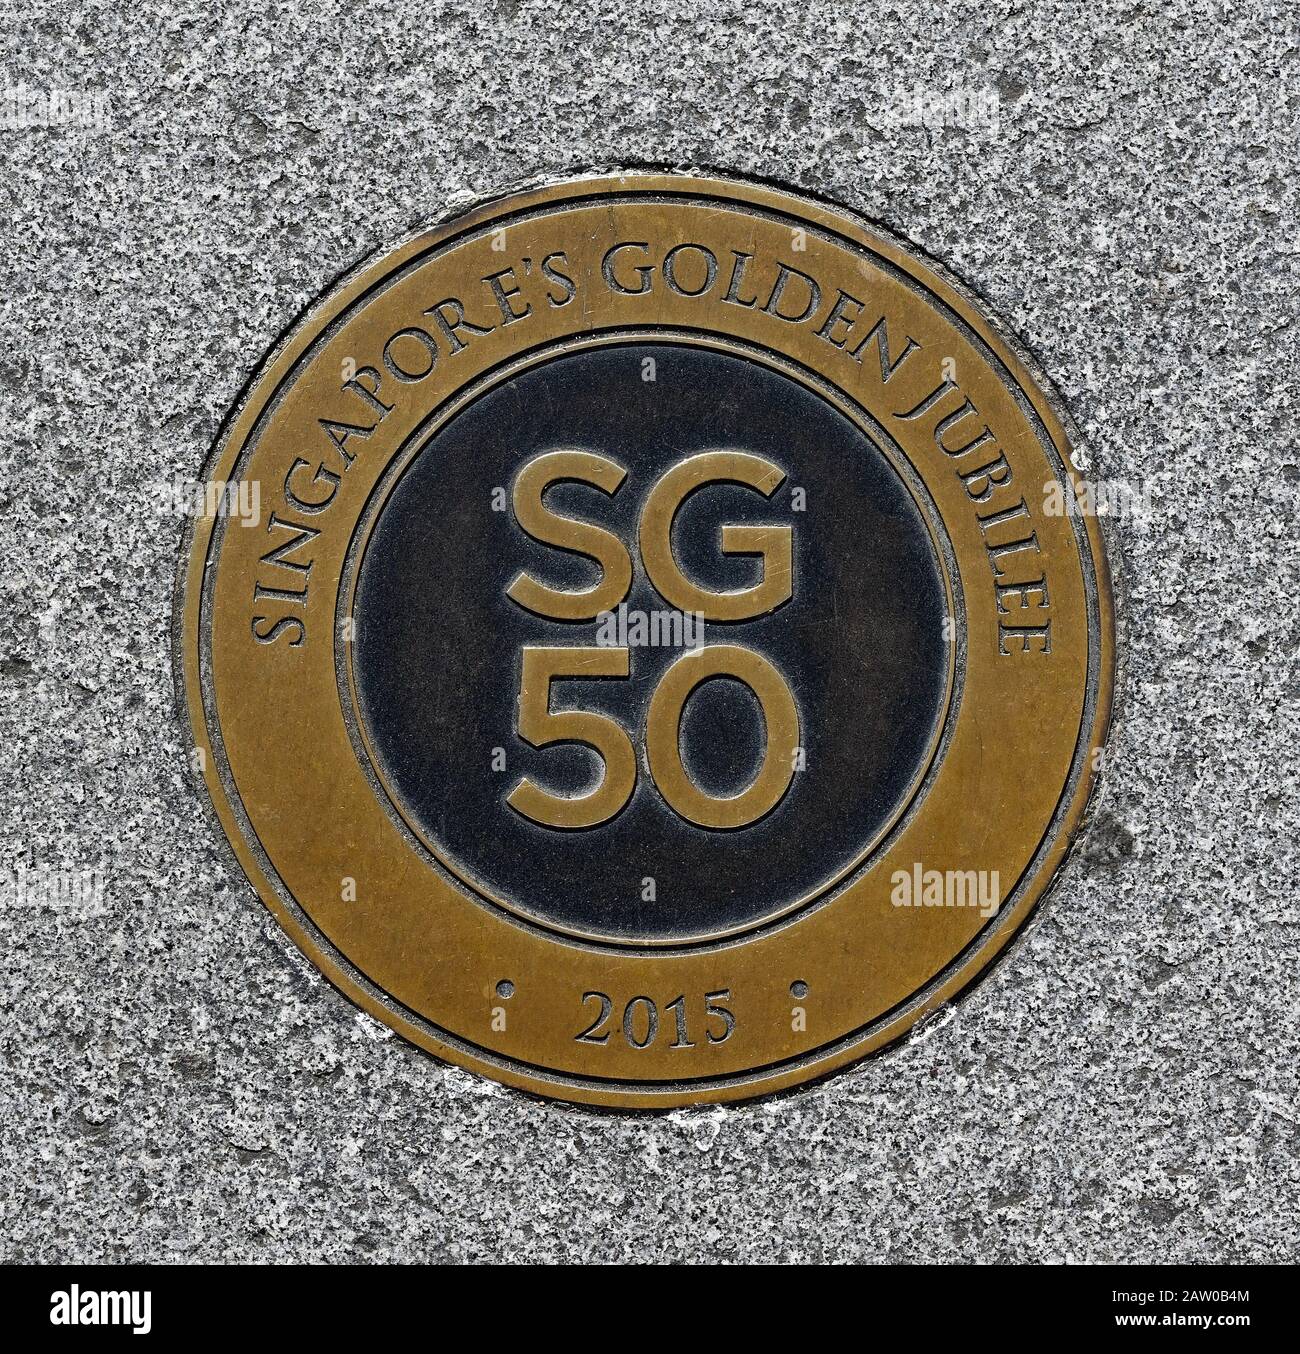 Singapur, singapur - 2020.01.25: Runder bronzener Straßenbelag an der anderson-brücke im Gedenken an singapur 50 Jahre Staatsjubiläum Stockfoto